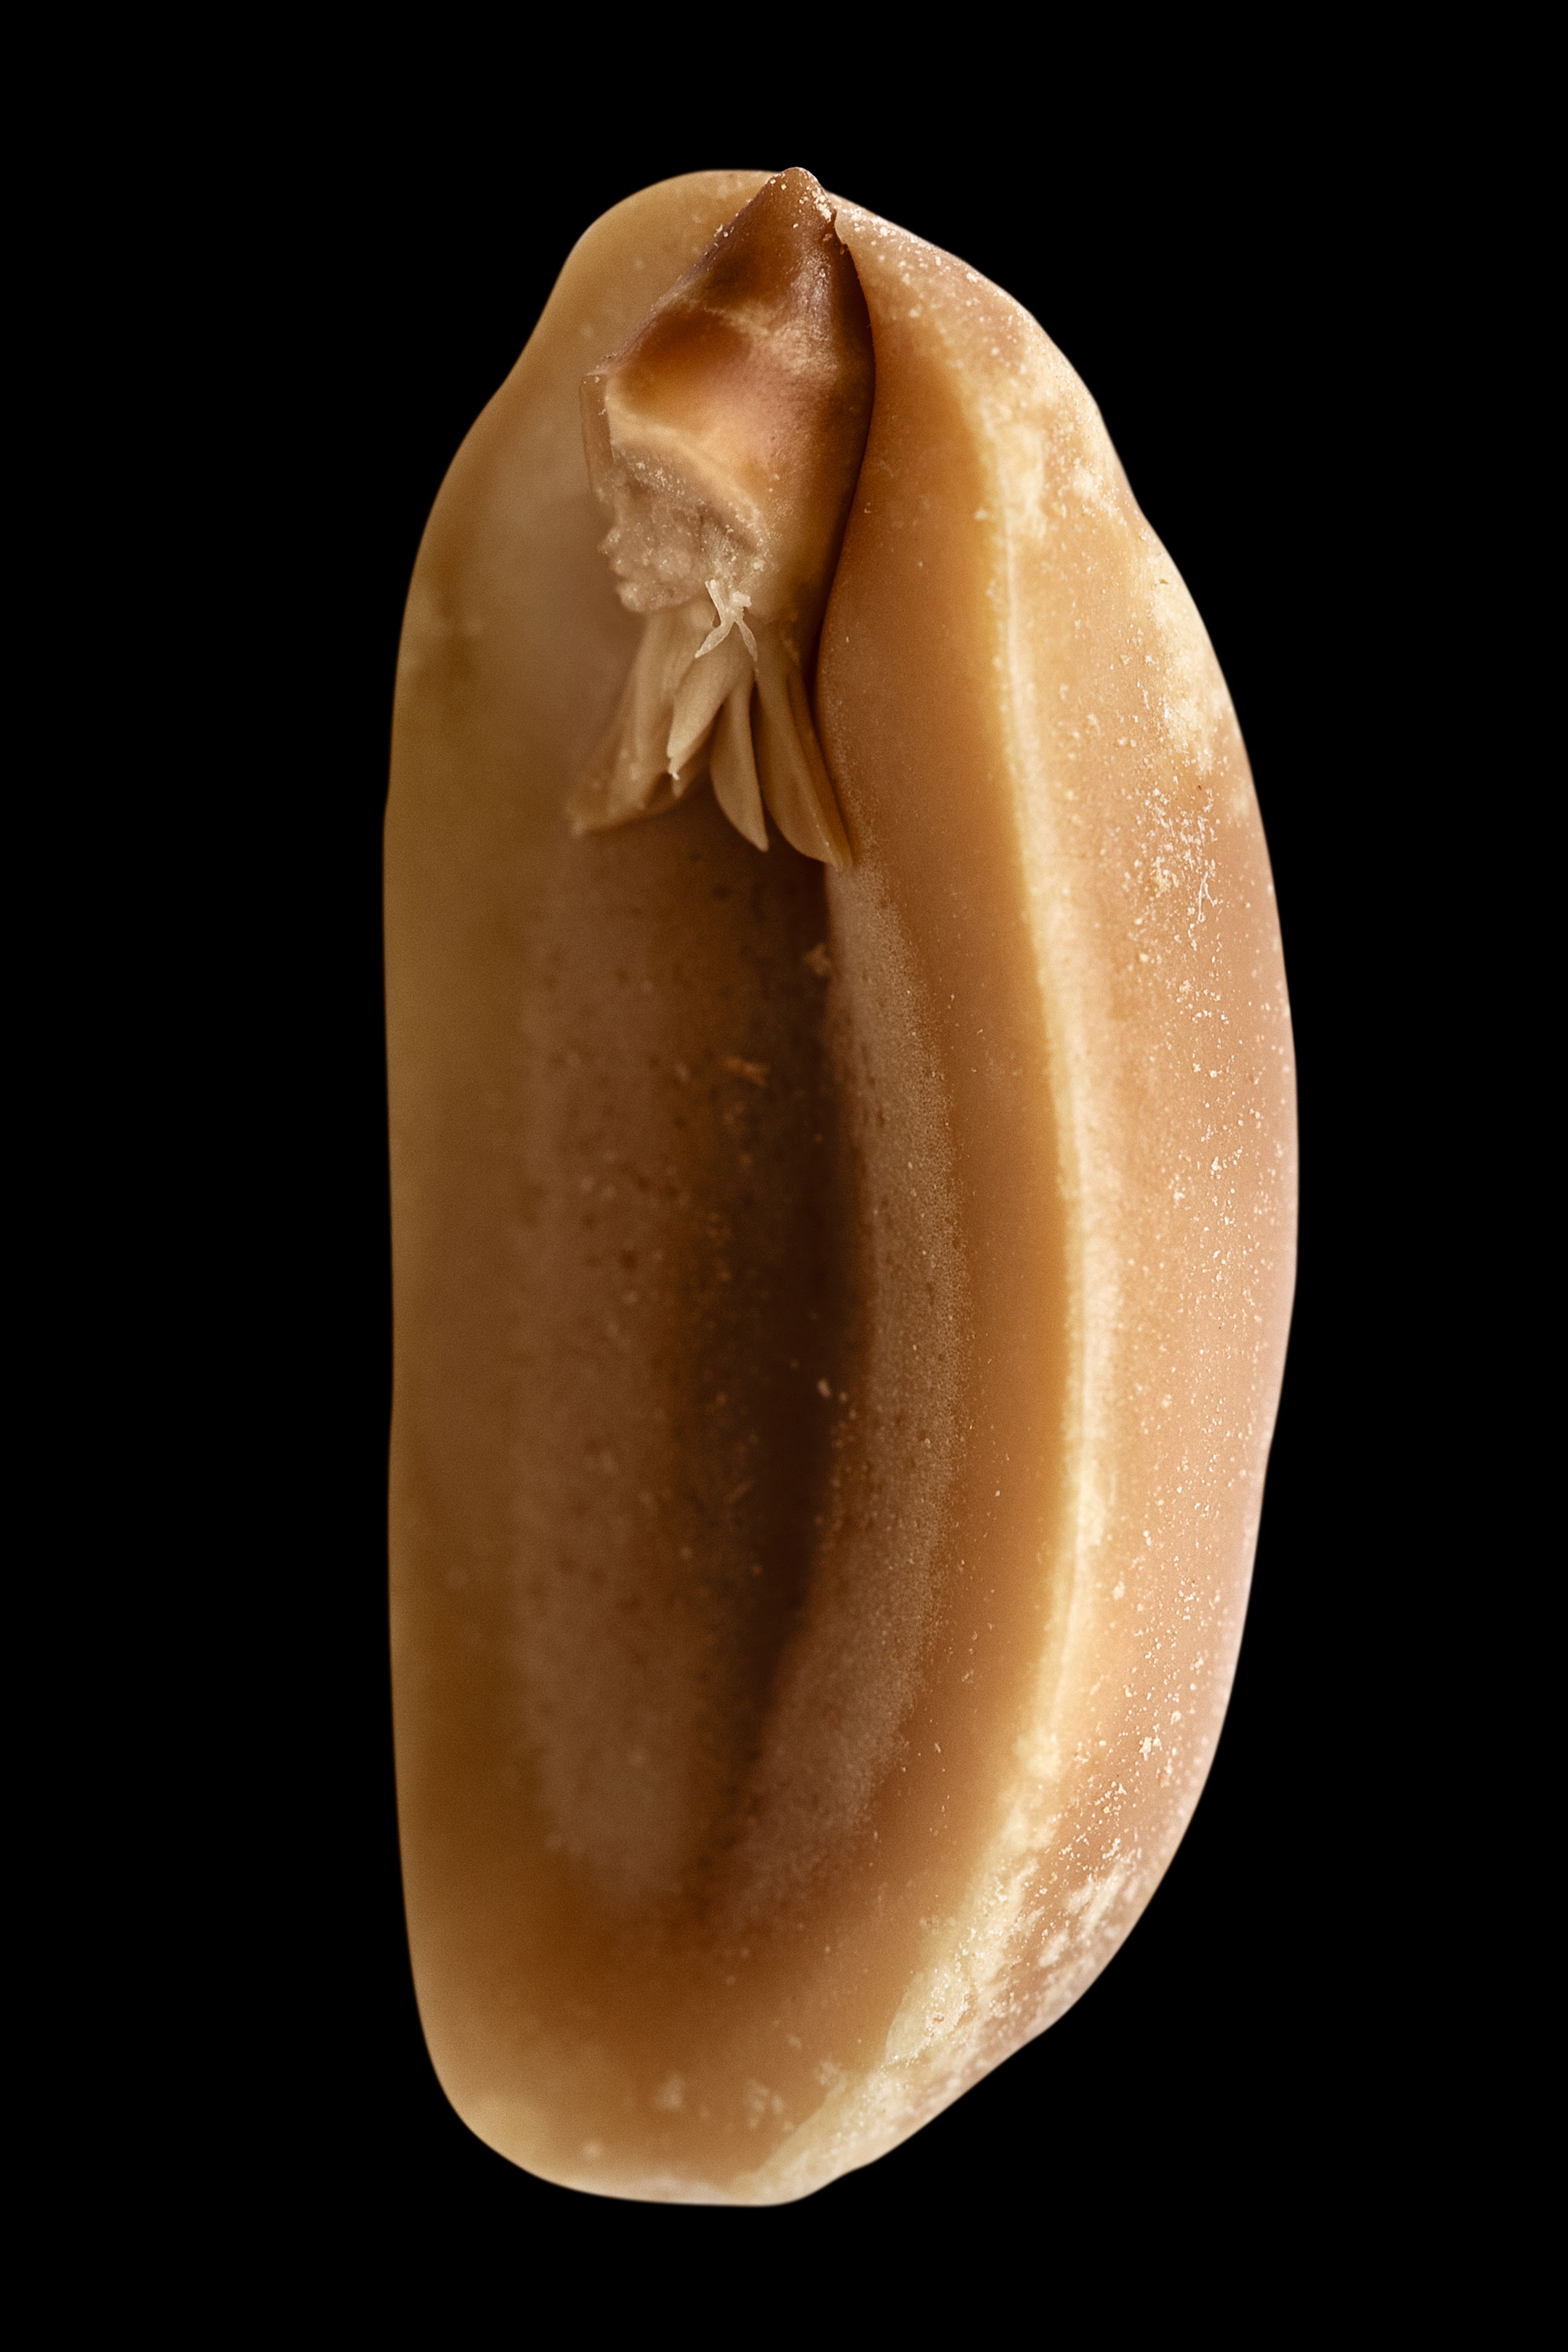 Art, A. hypogaea albus (peanut elf), fig. 9, 2008